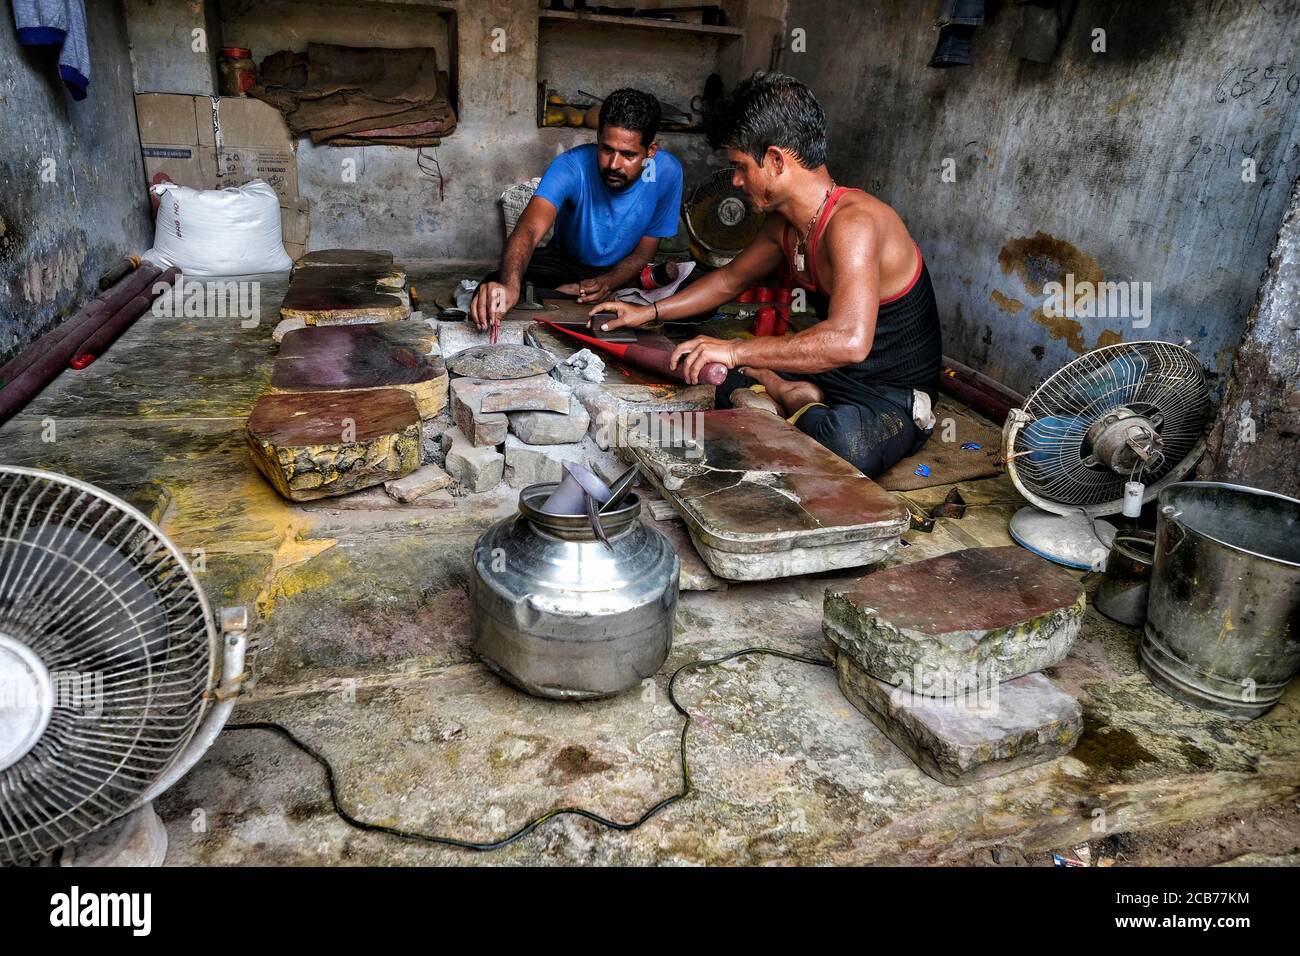 Bundi, Inde - août 2020: Deux hommes faisant des bracelets dans un petit atelier dans la vieille ville de Bundi le 10 août 2020 à Bundi, Rajasthan. Inde Banque D'Images